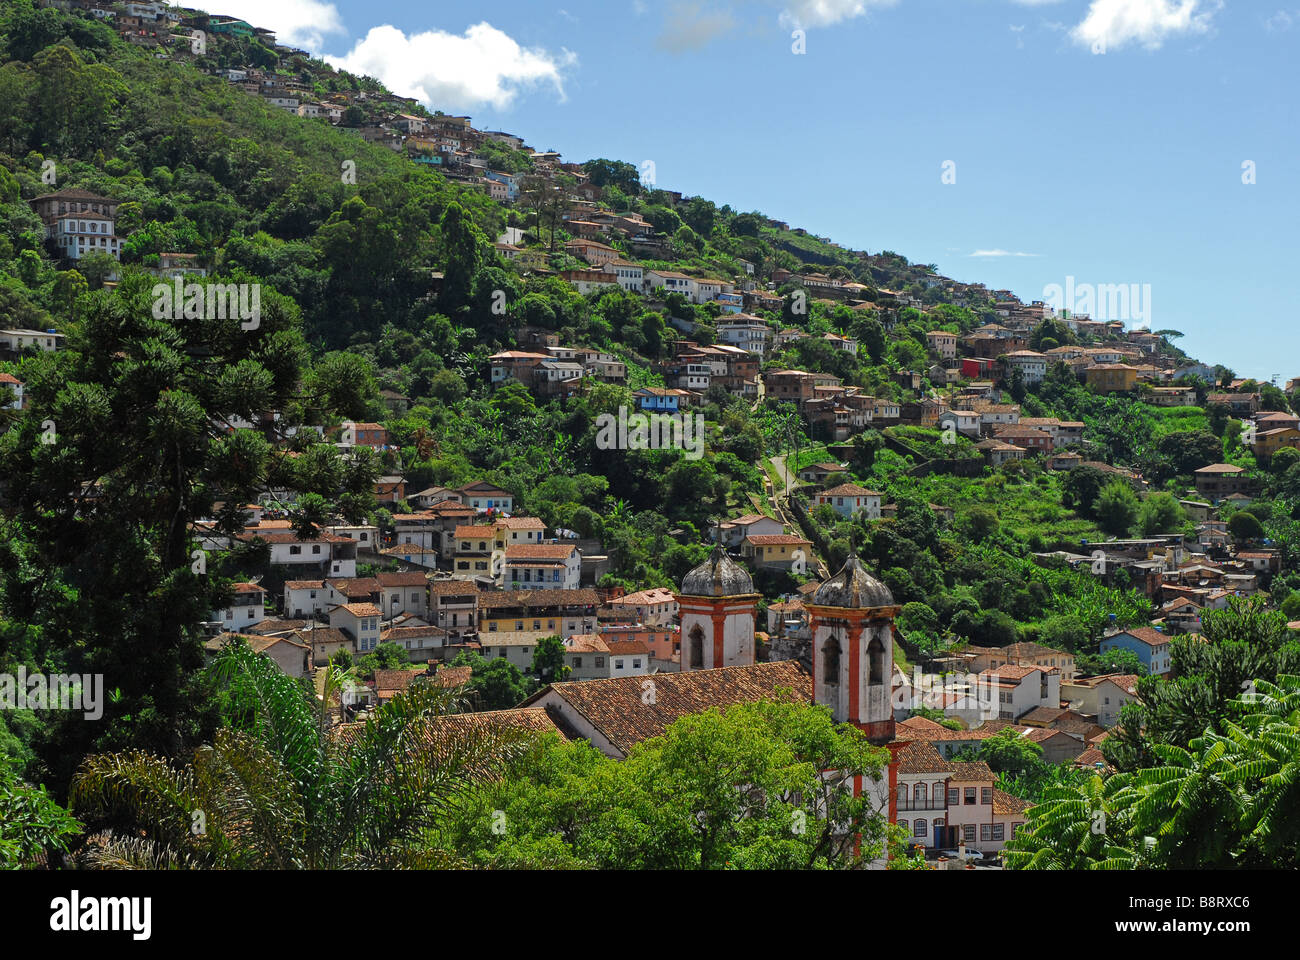 Eine Hanglage Ansicht von Ouro Preto, eine historische, kolonialen Goldgräberstadt in Minas Gerais, Brasilien Stockfoto